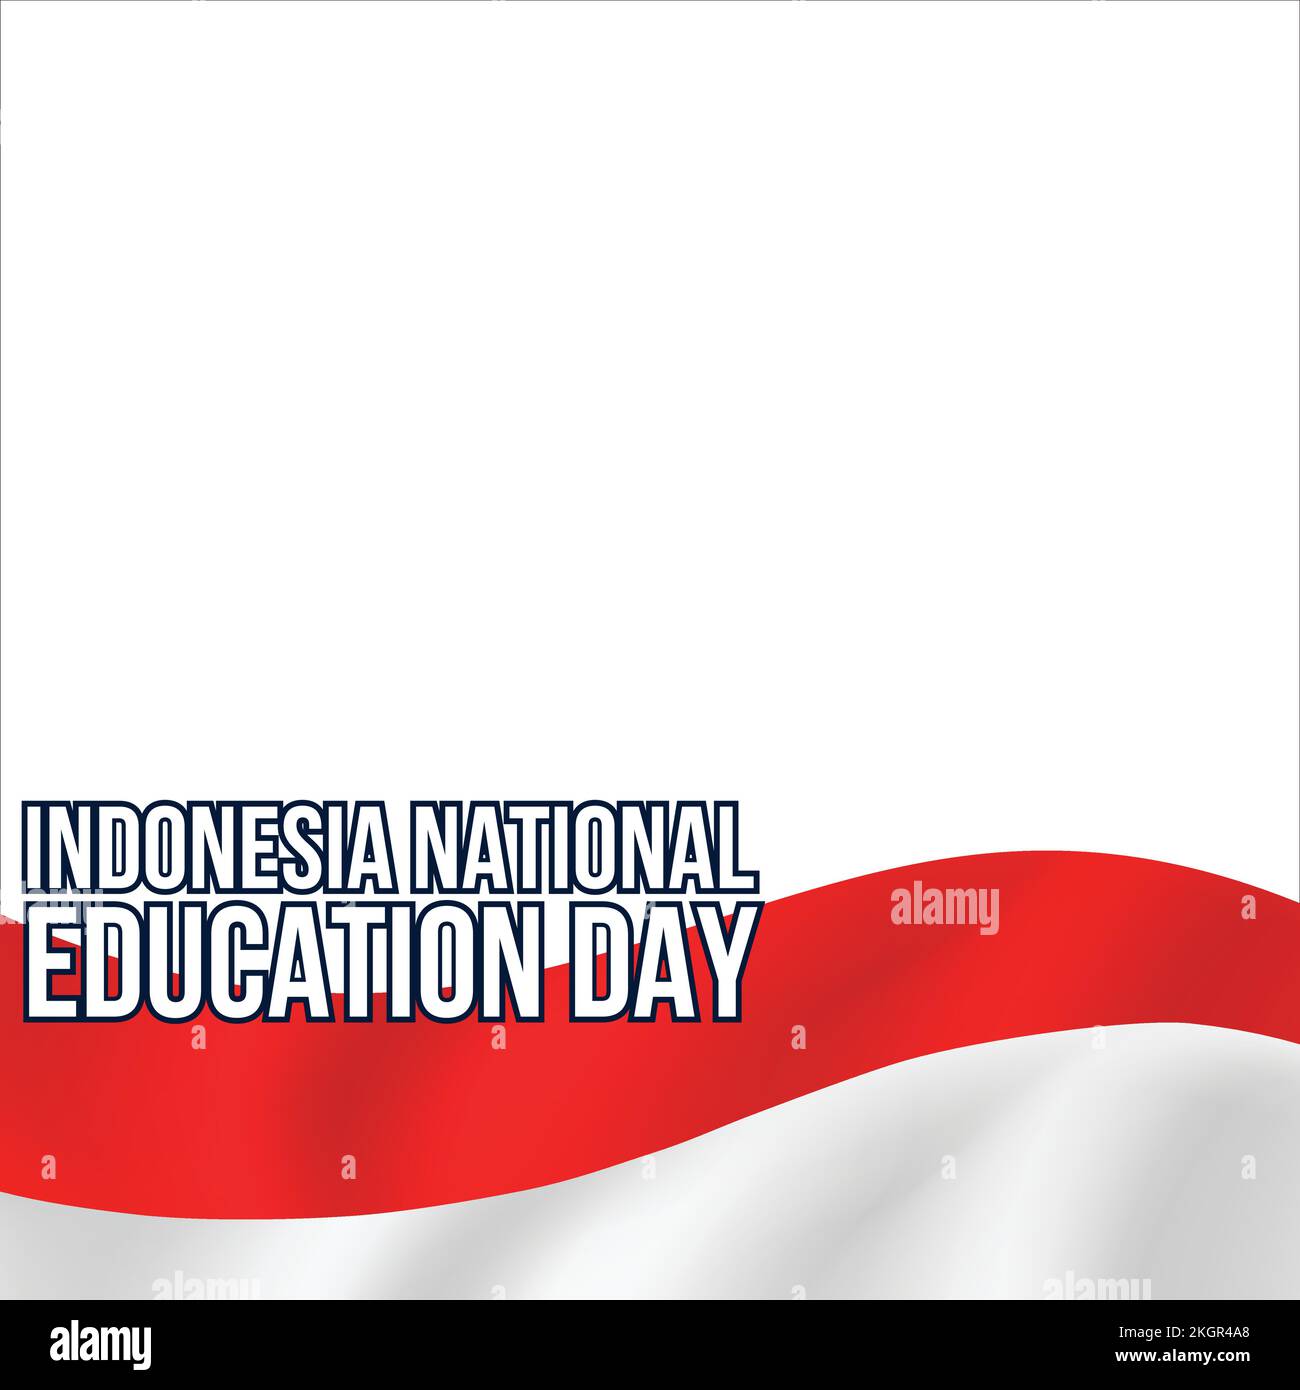 Indonesischer nationaler Schultag mit Schwarzweiß-Texteffekt, indonesische Flagge, Texteffekt auf weißem Hintergrund, indonesische nationale Bildung Stock Vektor